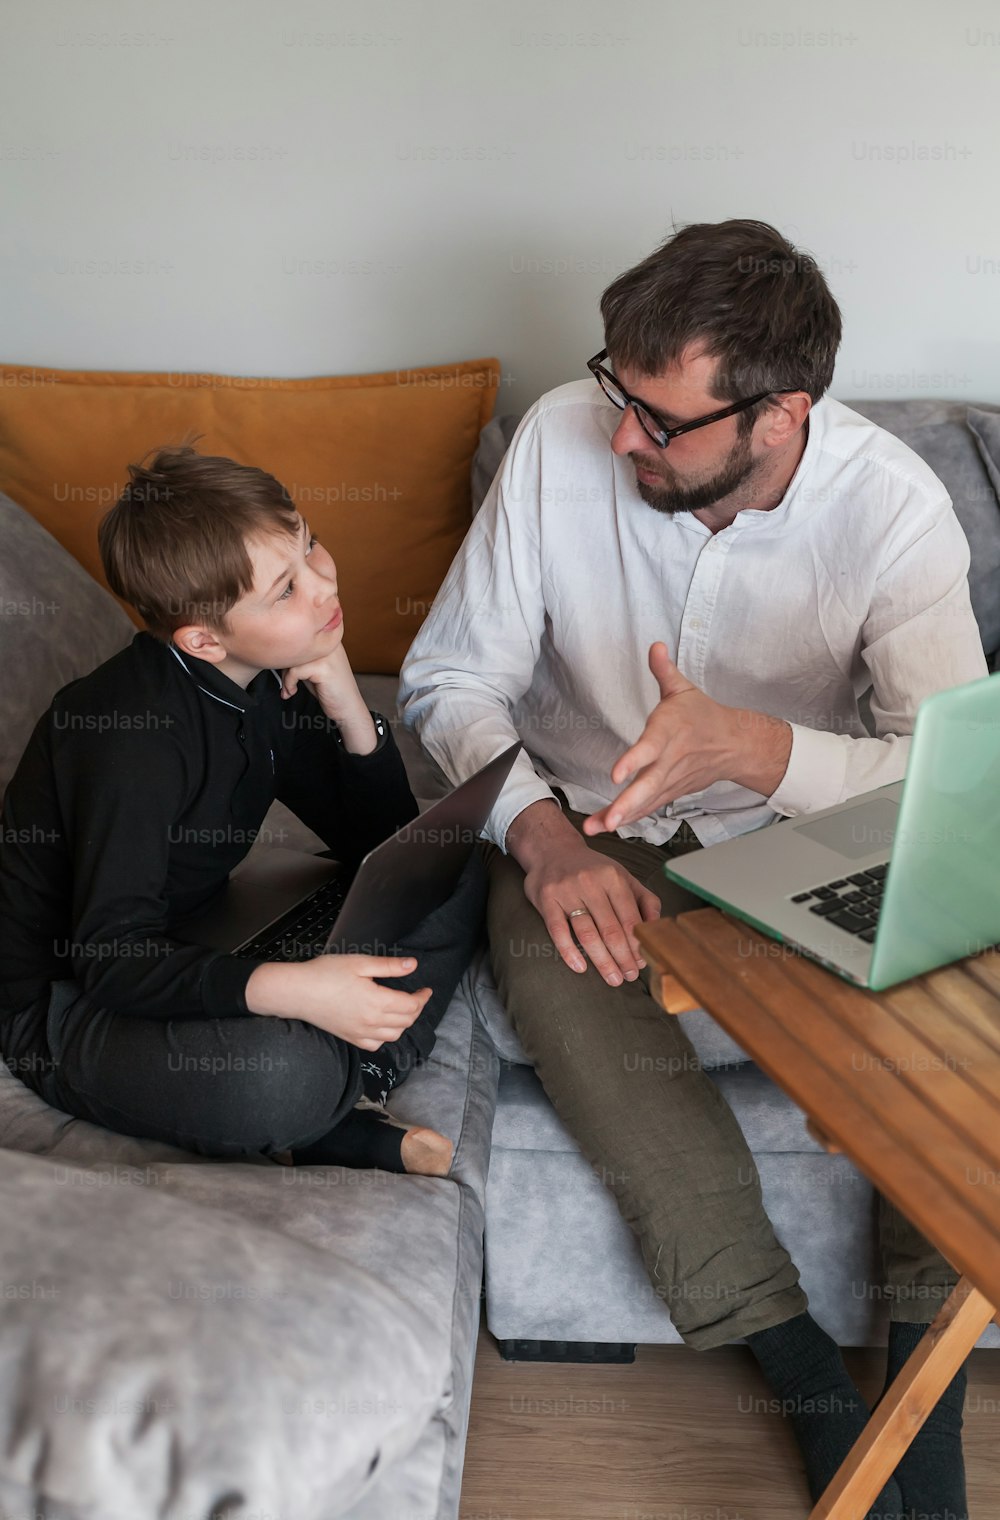 Un hombre y un niño sentados en un sofá mirando una computadora portátil